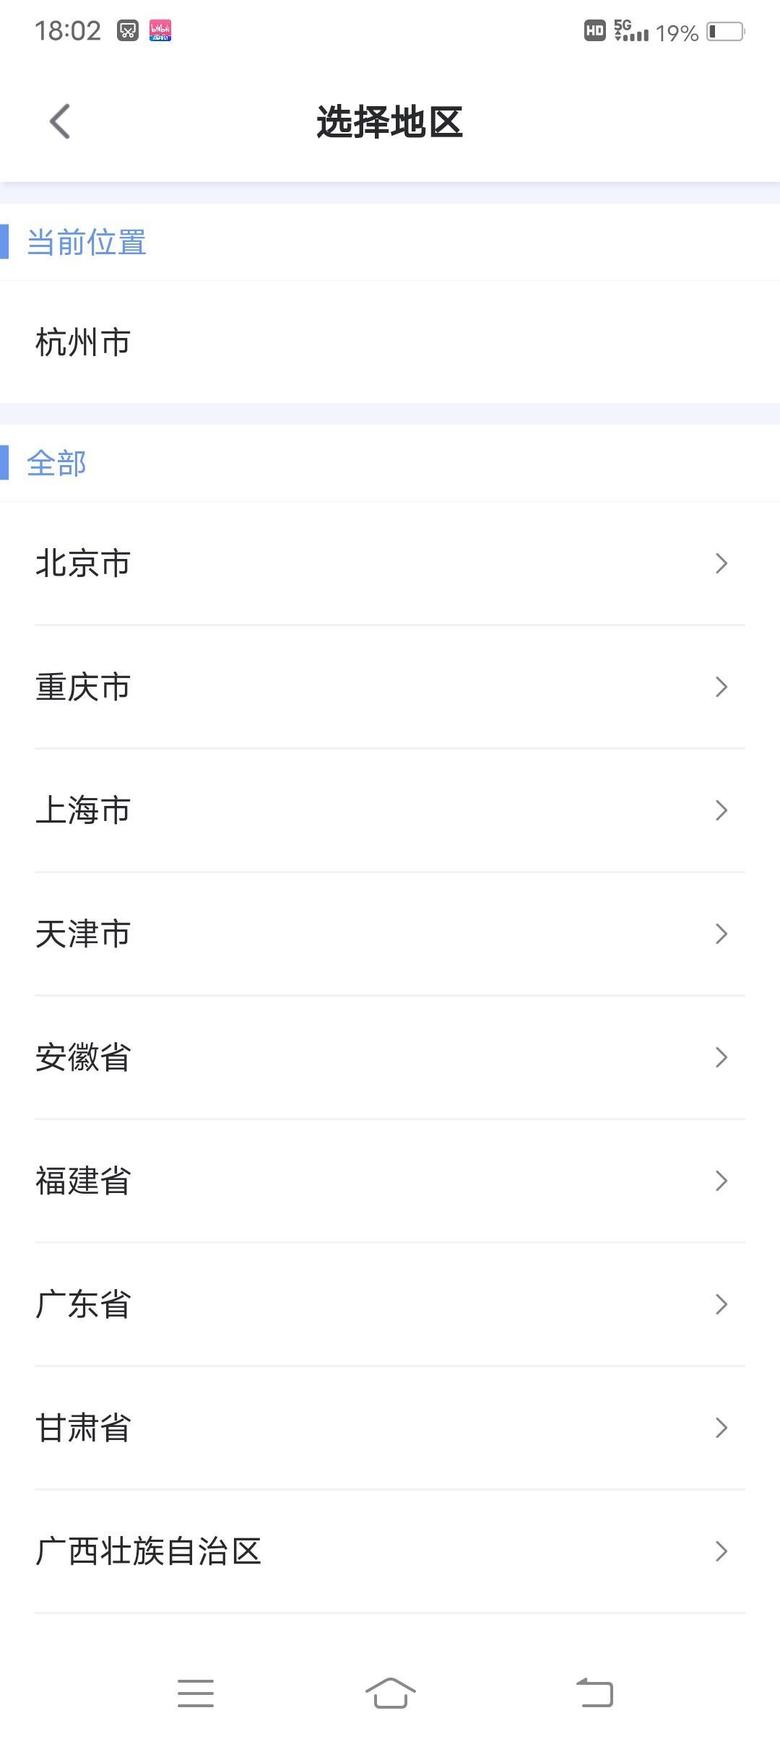 迈锐宝xl 注册安吉星，选经销商死活默认为上海，定位已经显示在杭州了，手动改成杭州都没用，请问大家你们有没有遇到这种情况，怎么解决的，是不是和手机有关系，我是安卓机